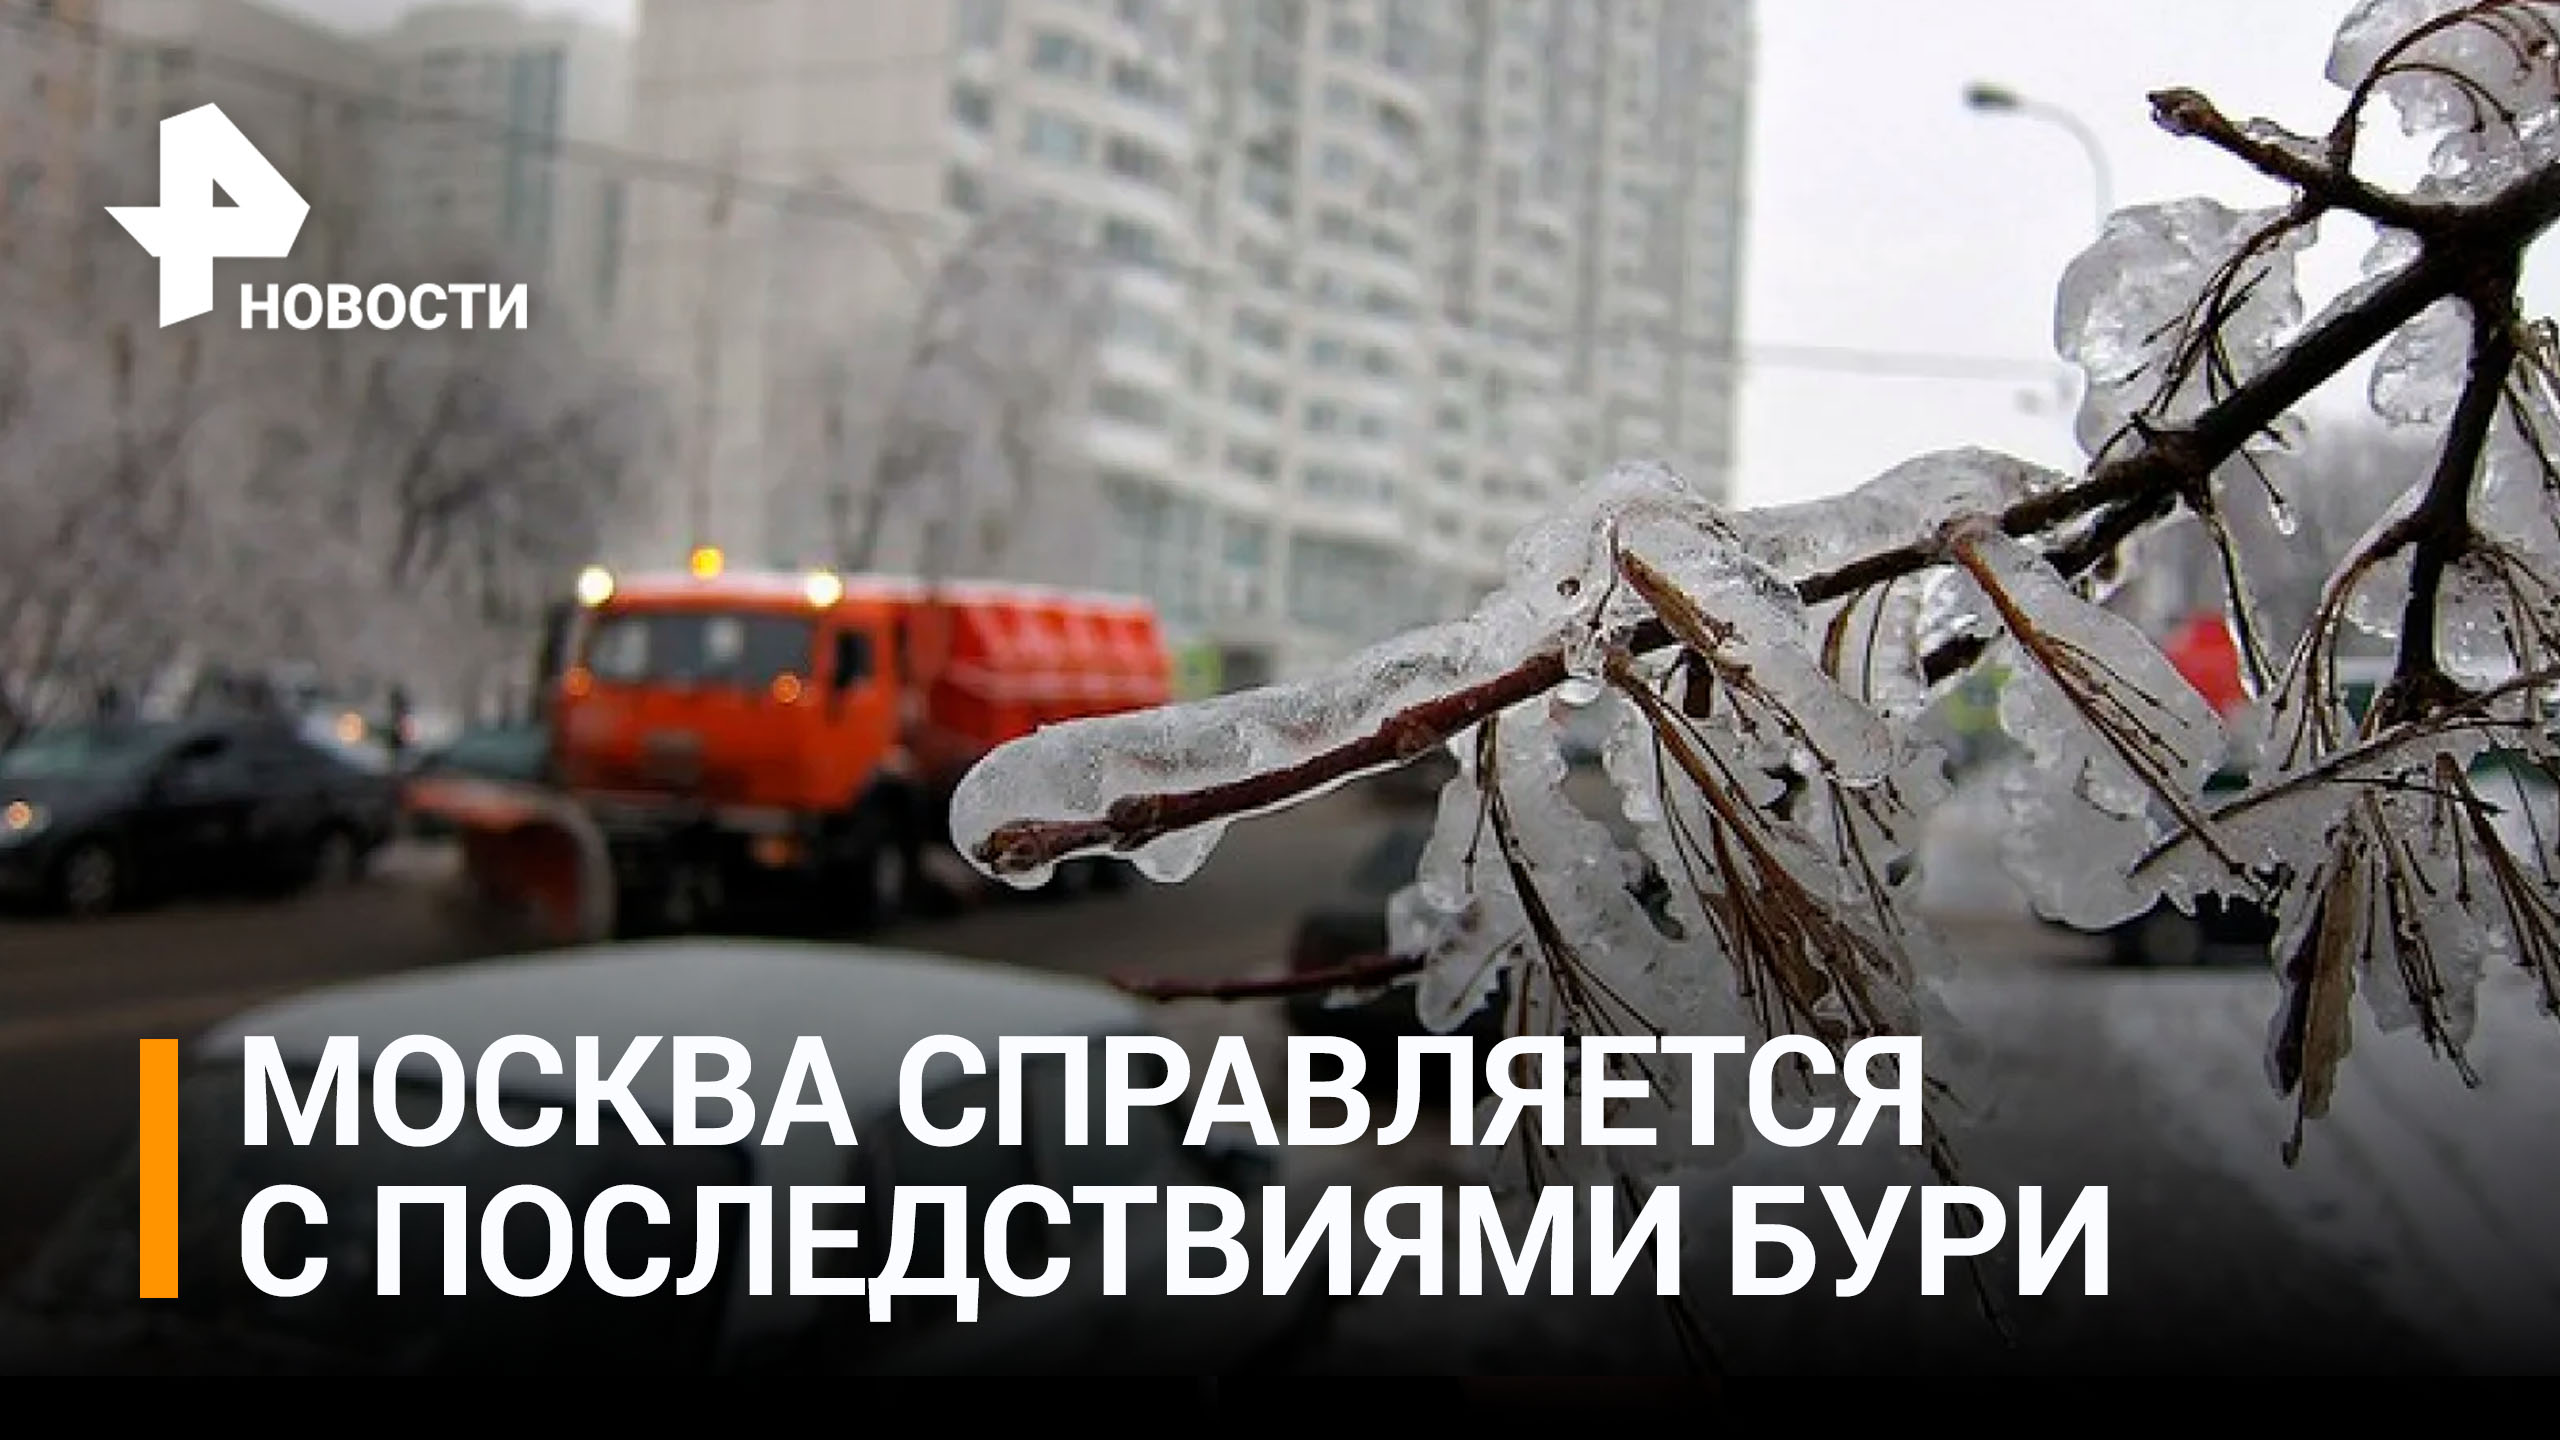 Скользкие тротуары и авто-флэшмоб: столица оправляется от ледяного шторма / РЕН Новости